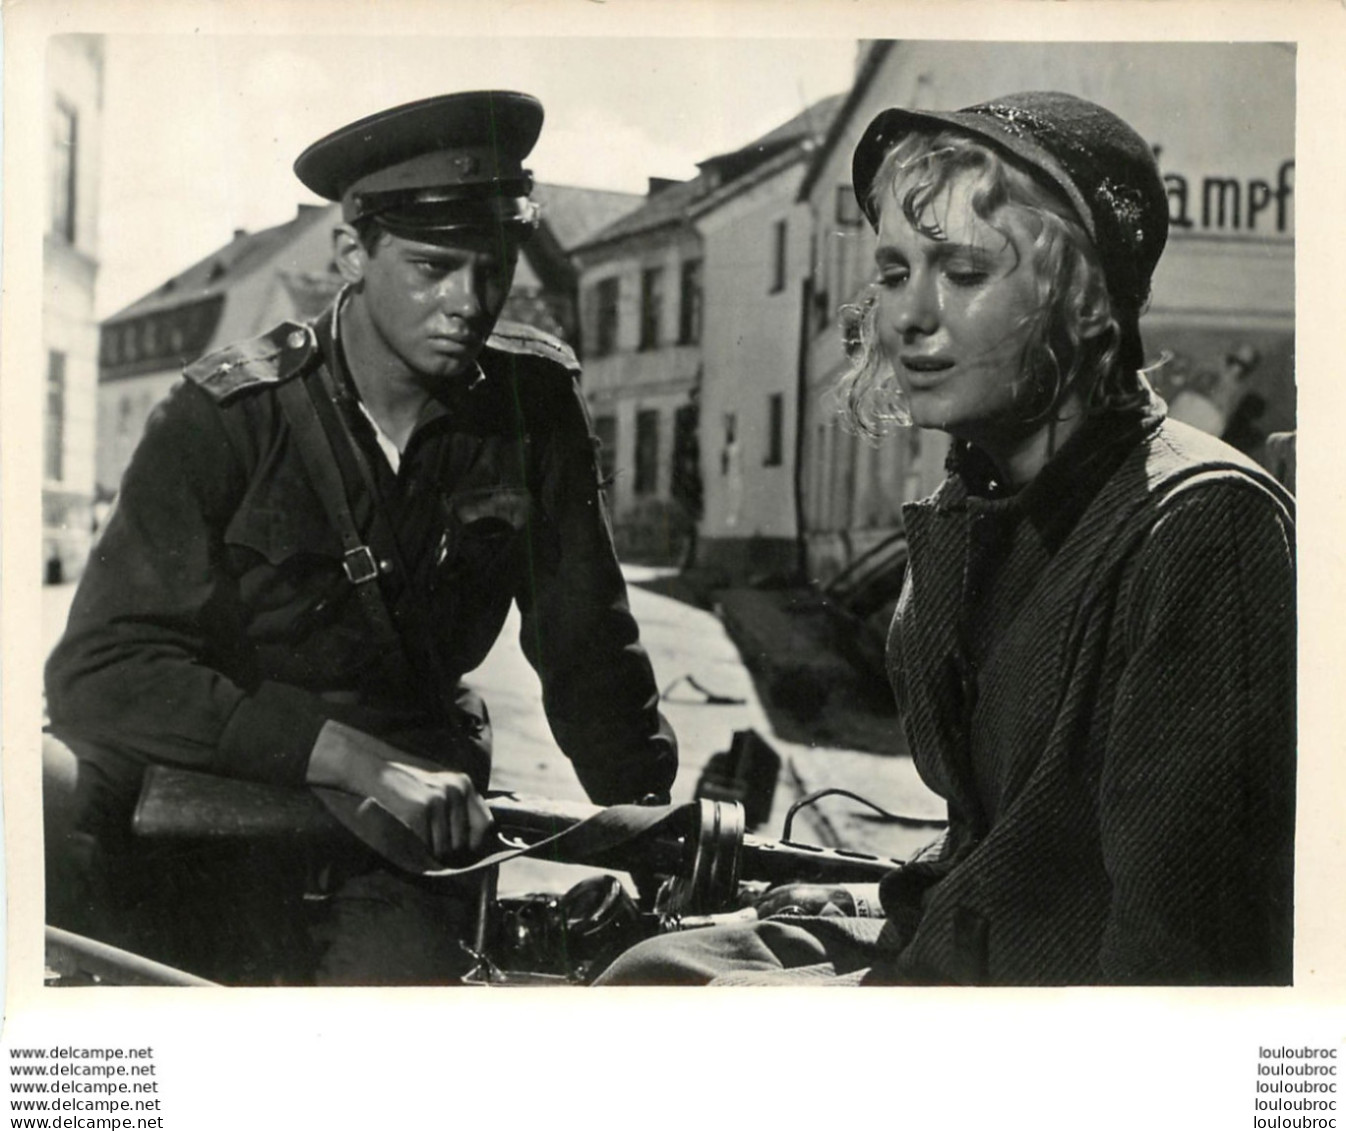 PHOTO FILM SOVIETIQUE PACE A CHI ENTRA PAIX A CELUI QUI ENTRE DE ALEXANDRE ALOV 1961 FORMAT 15 X 12 CM - Photos